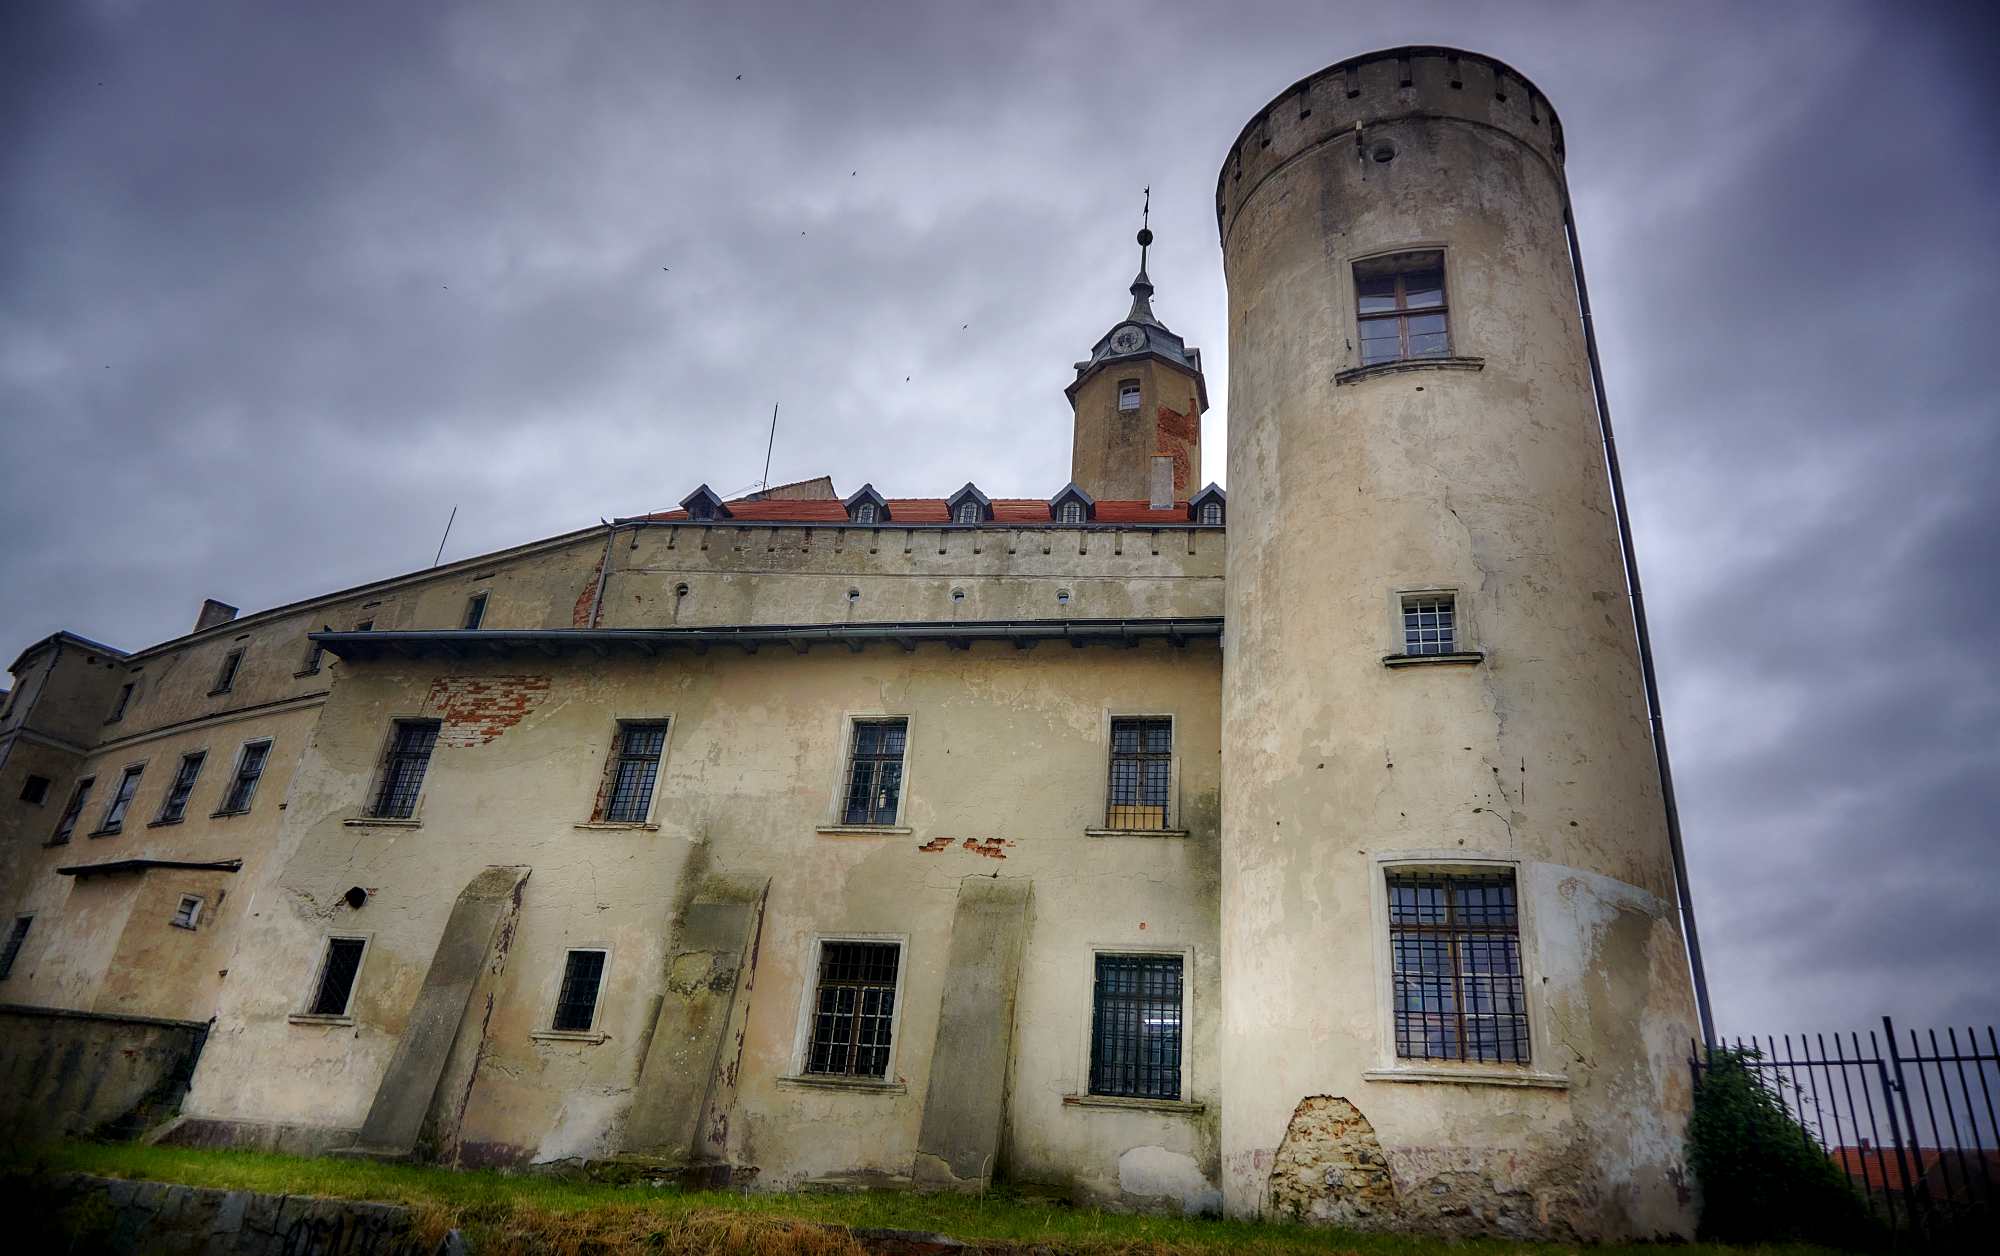 Zamek Piastowski w Jaworze znajduje się w fatalnym stanie